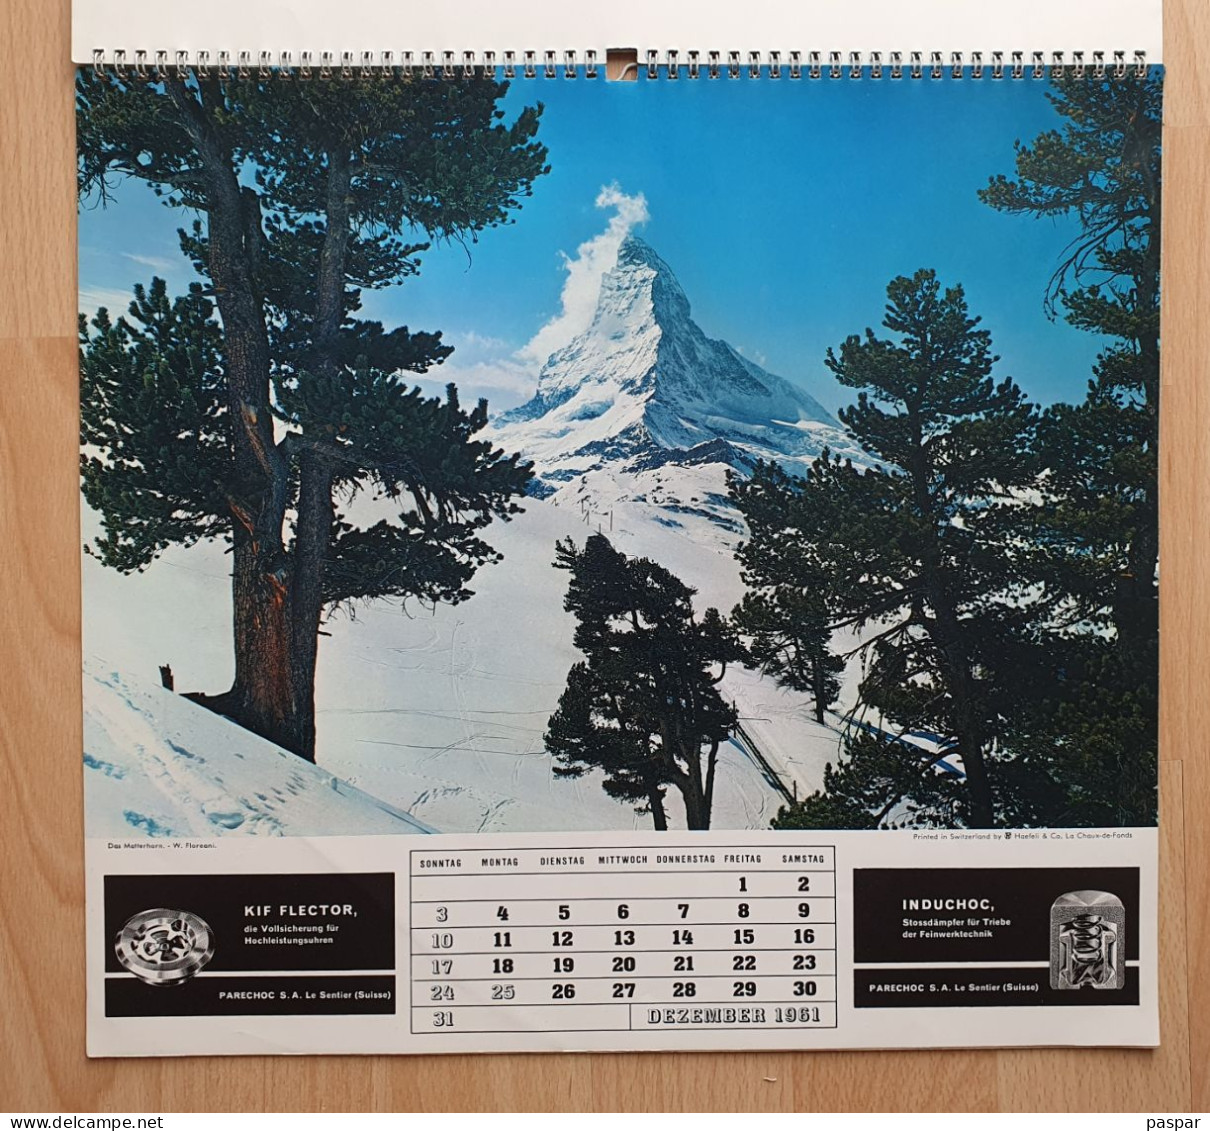 Grand calendrier 1961 - publicité Parechoc le Sentier, Alpa, Bolex, Thorens, Induchoc, Kif Flector - Vues de Suisse